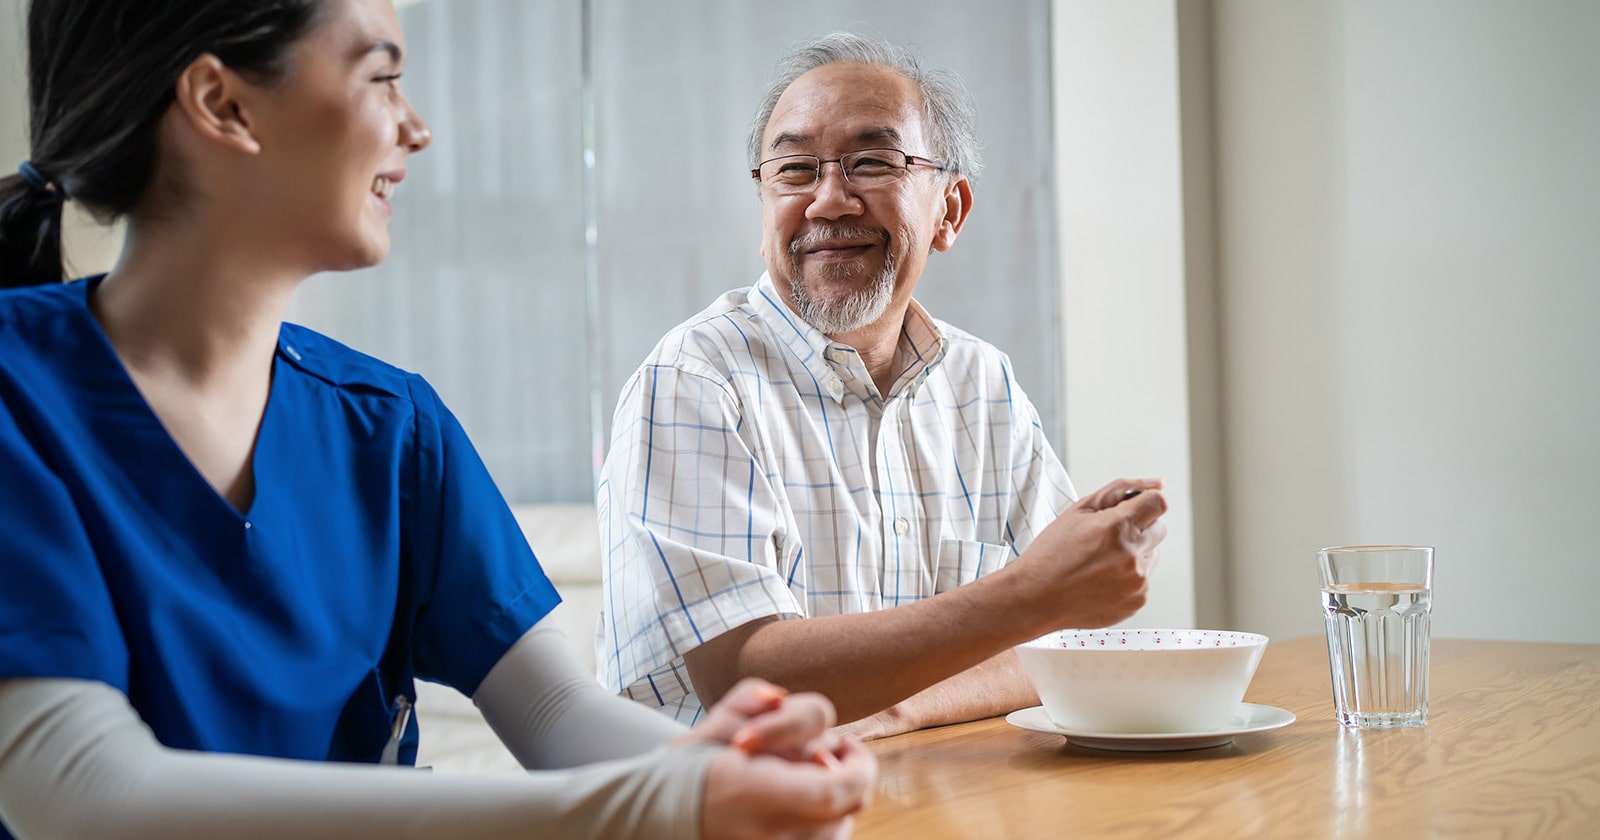 Older asian man wearing white smiling at nurse wearing blue